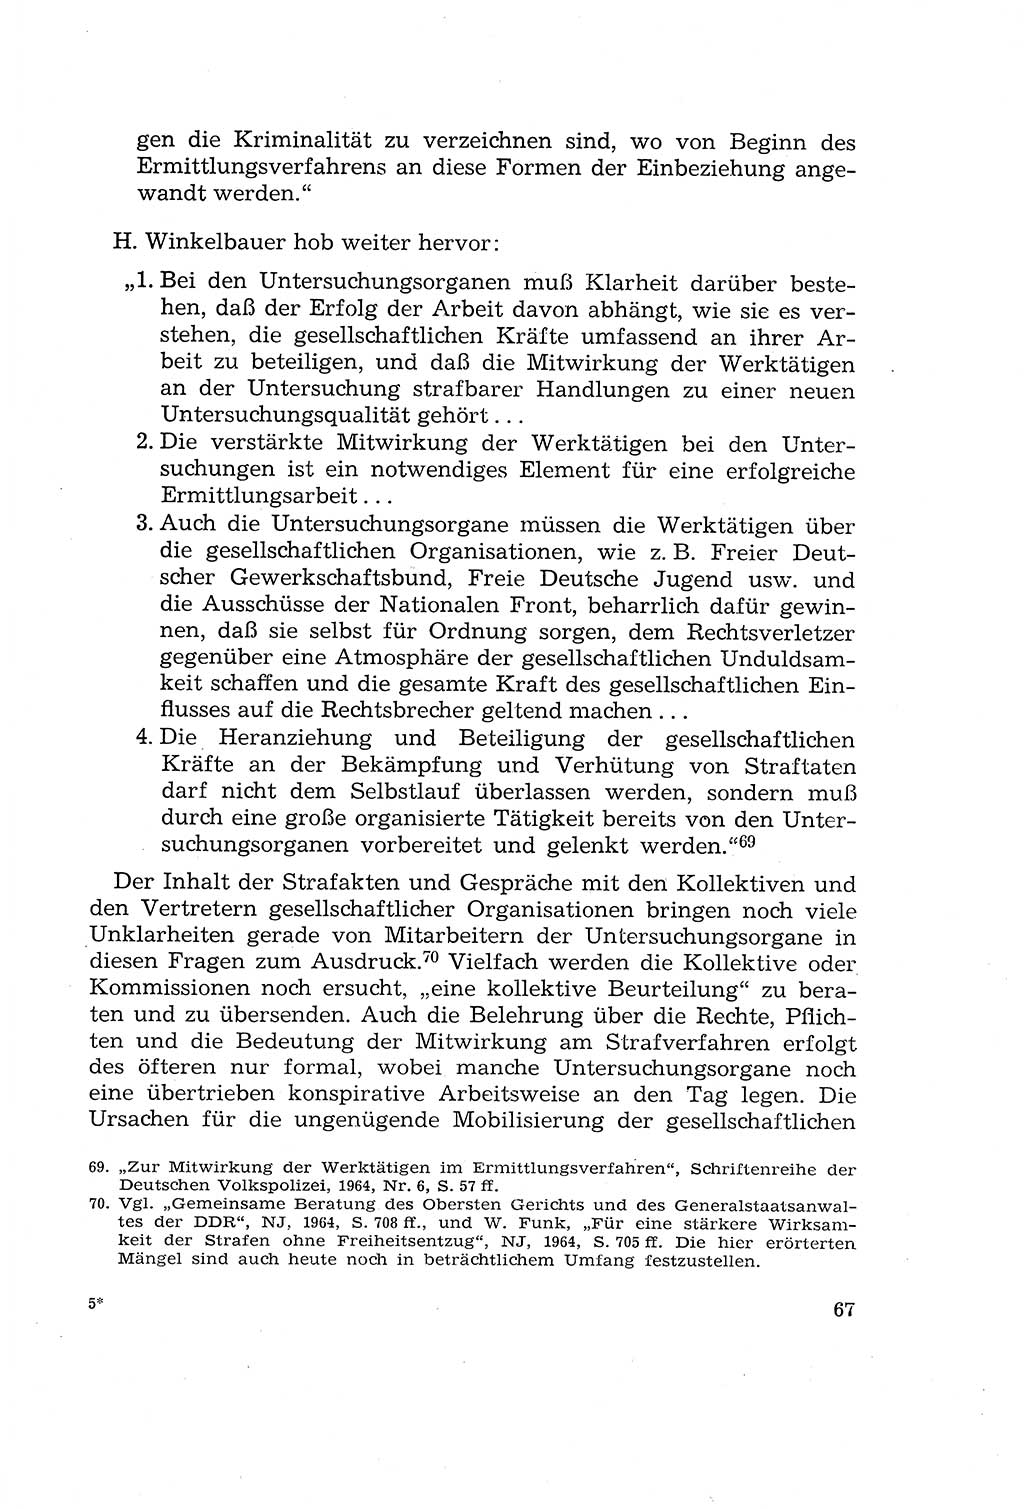 Die Mitwirkung der Werktätigen am Strafverfahren [Deutsche Demokratische Republik (DDR)] 1966, Seite 67 (Mitw. Str.-Verf. DDR 1966, S. 67)